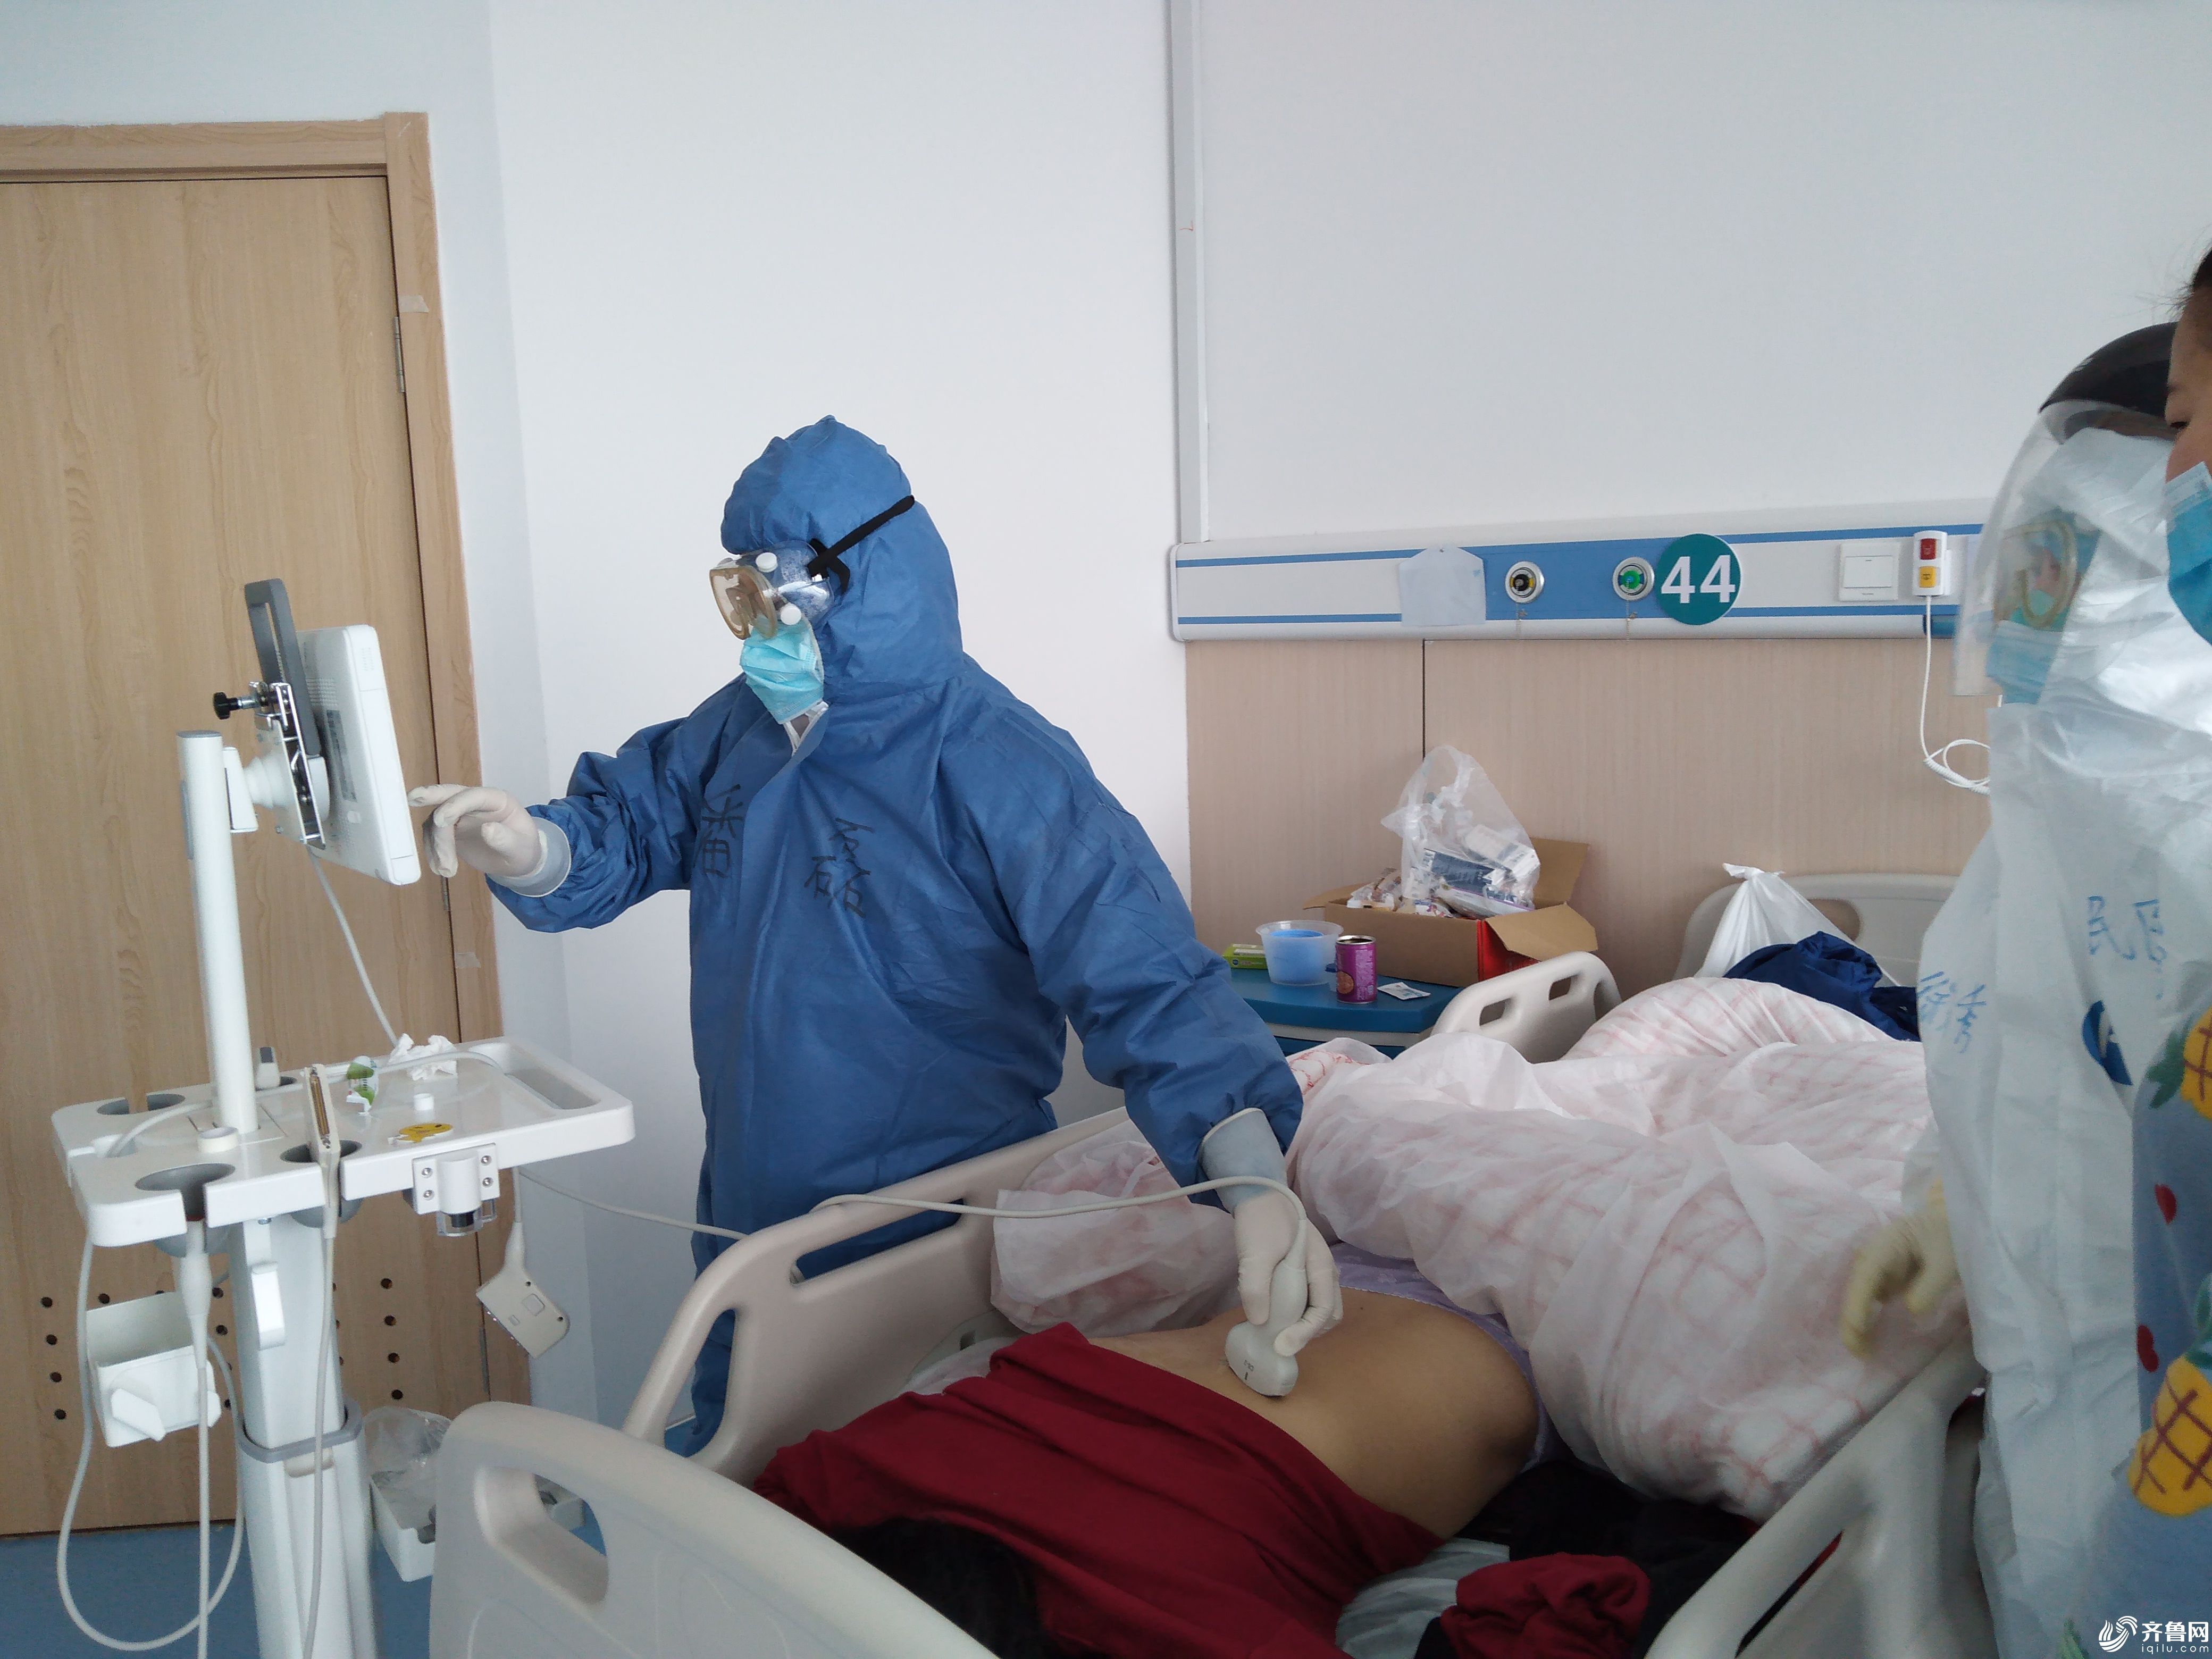 第二批援鄂医疗队员潘磊医师为新冠肺炎患者进行了肺部超声监测治疗